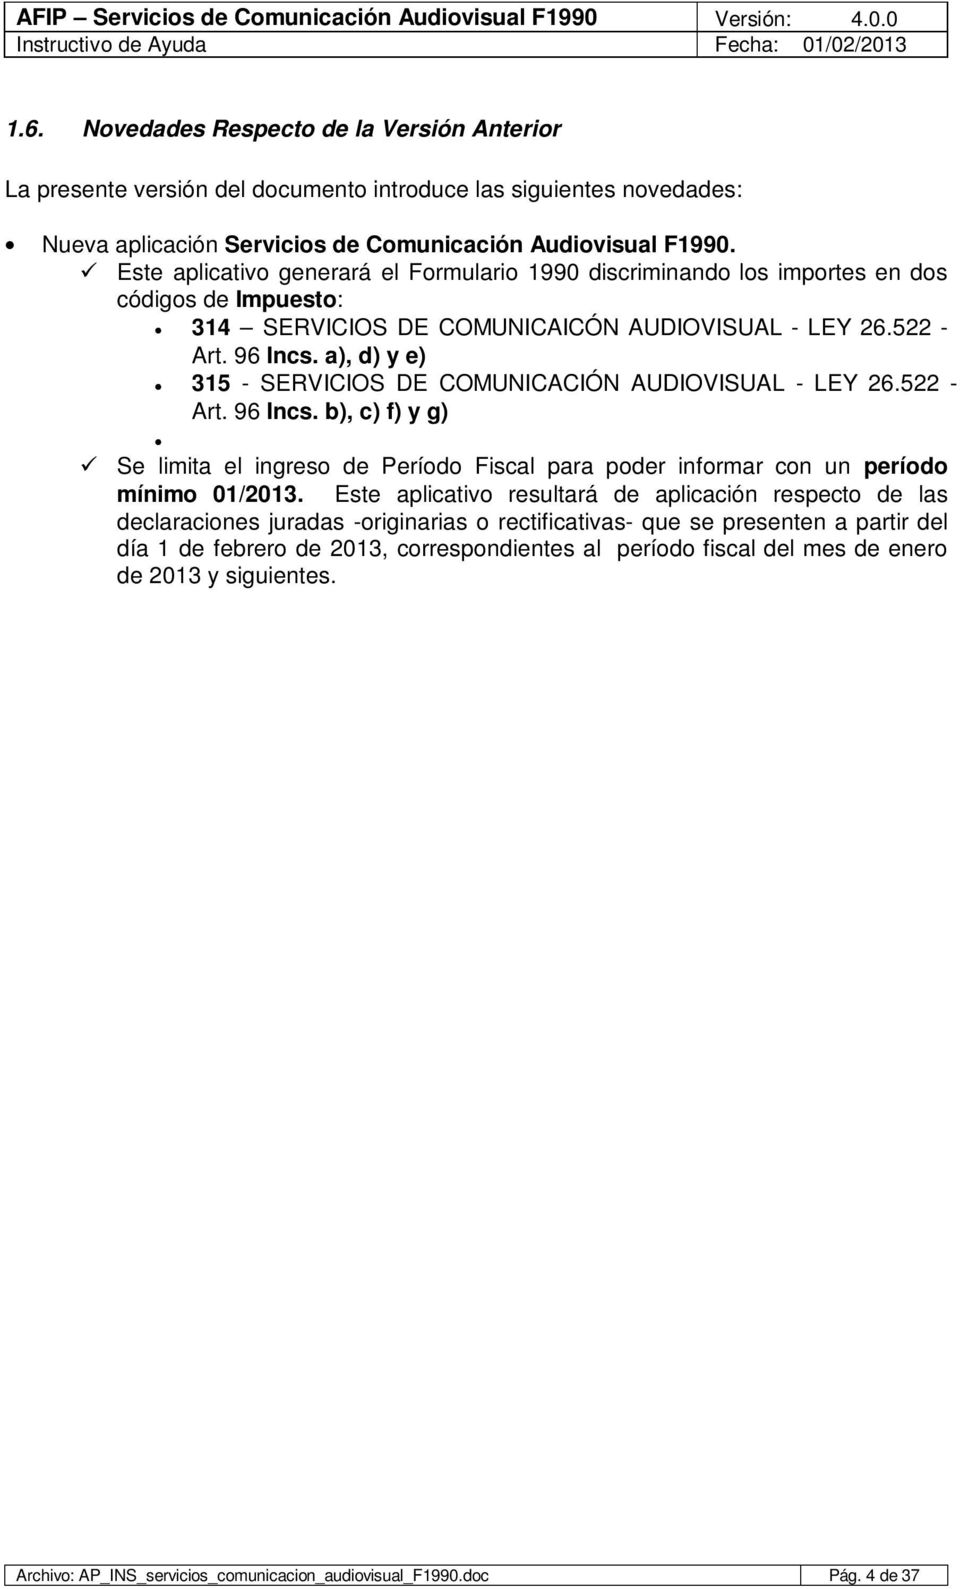 a), d) y e) 315 - SERVICIOS DE COMUNICACIÓN AUDIOVISUAL - LEY 26.522 - Art. 96 Incs. b), c) f) y g) Se limita el ingreso de Período Fiscal para poder informar con un período mínimo 01/2013.